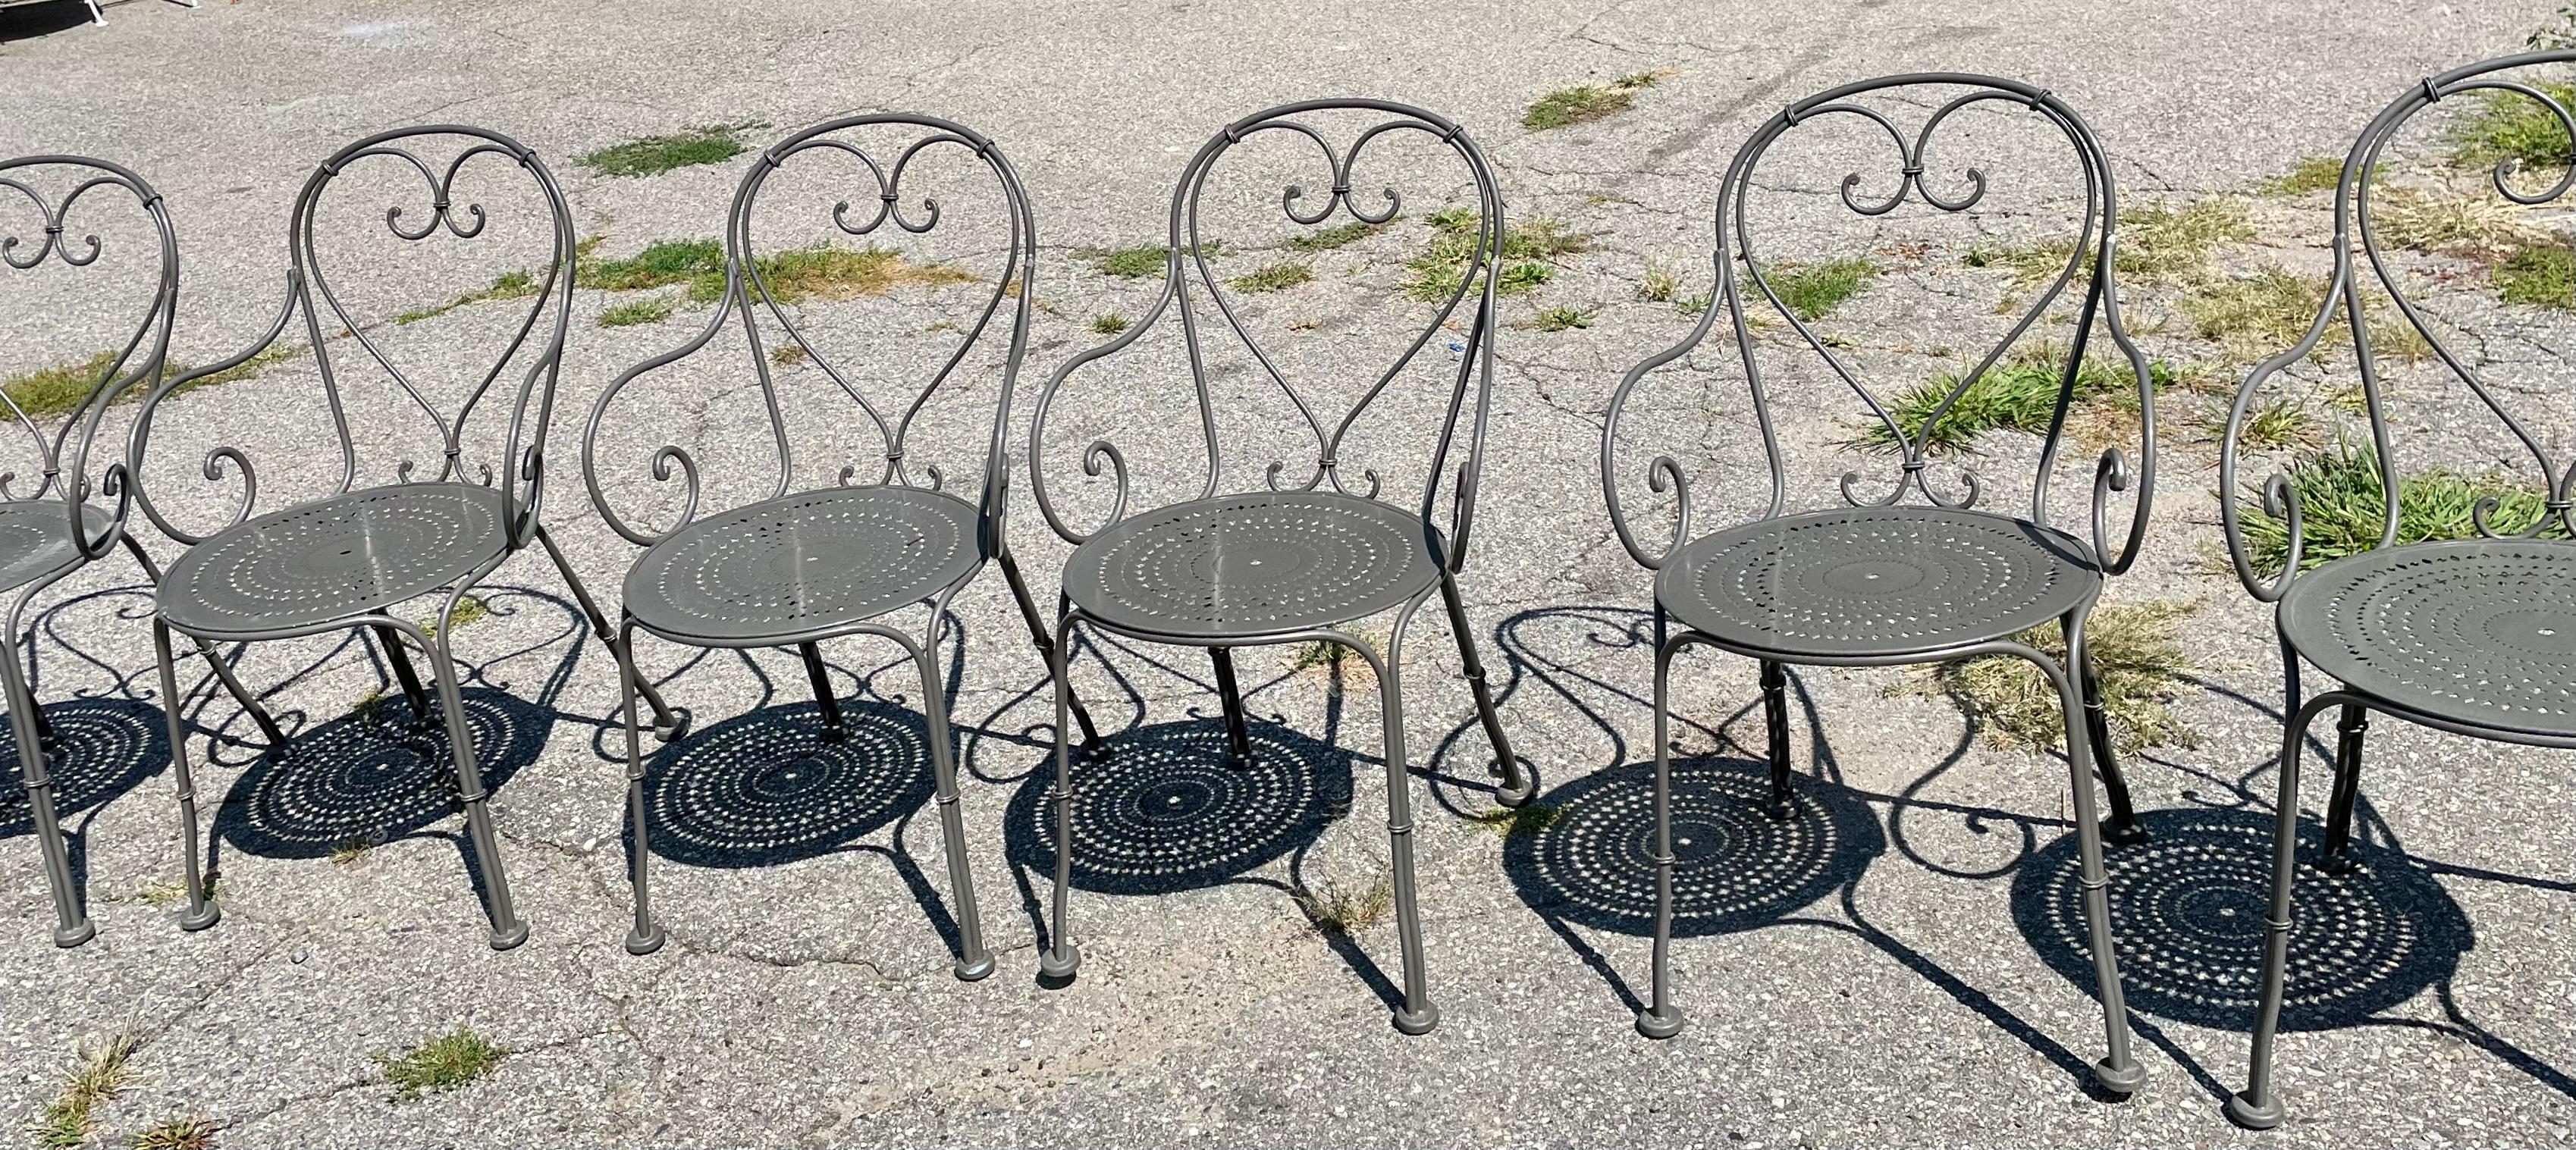 Woodard Chairs A Set of 10

Les chaises de café françaises en fer forgé robuste sont disponibles dès maintenant et prêtes à être expédiées pour votre plaisir immédiat. Ces chaises sont dotées d'un dossier en forme de cœur, d'accoudoirs en volutes et